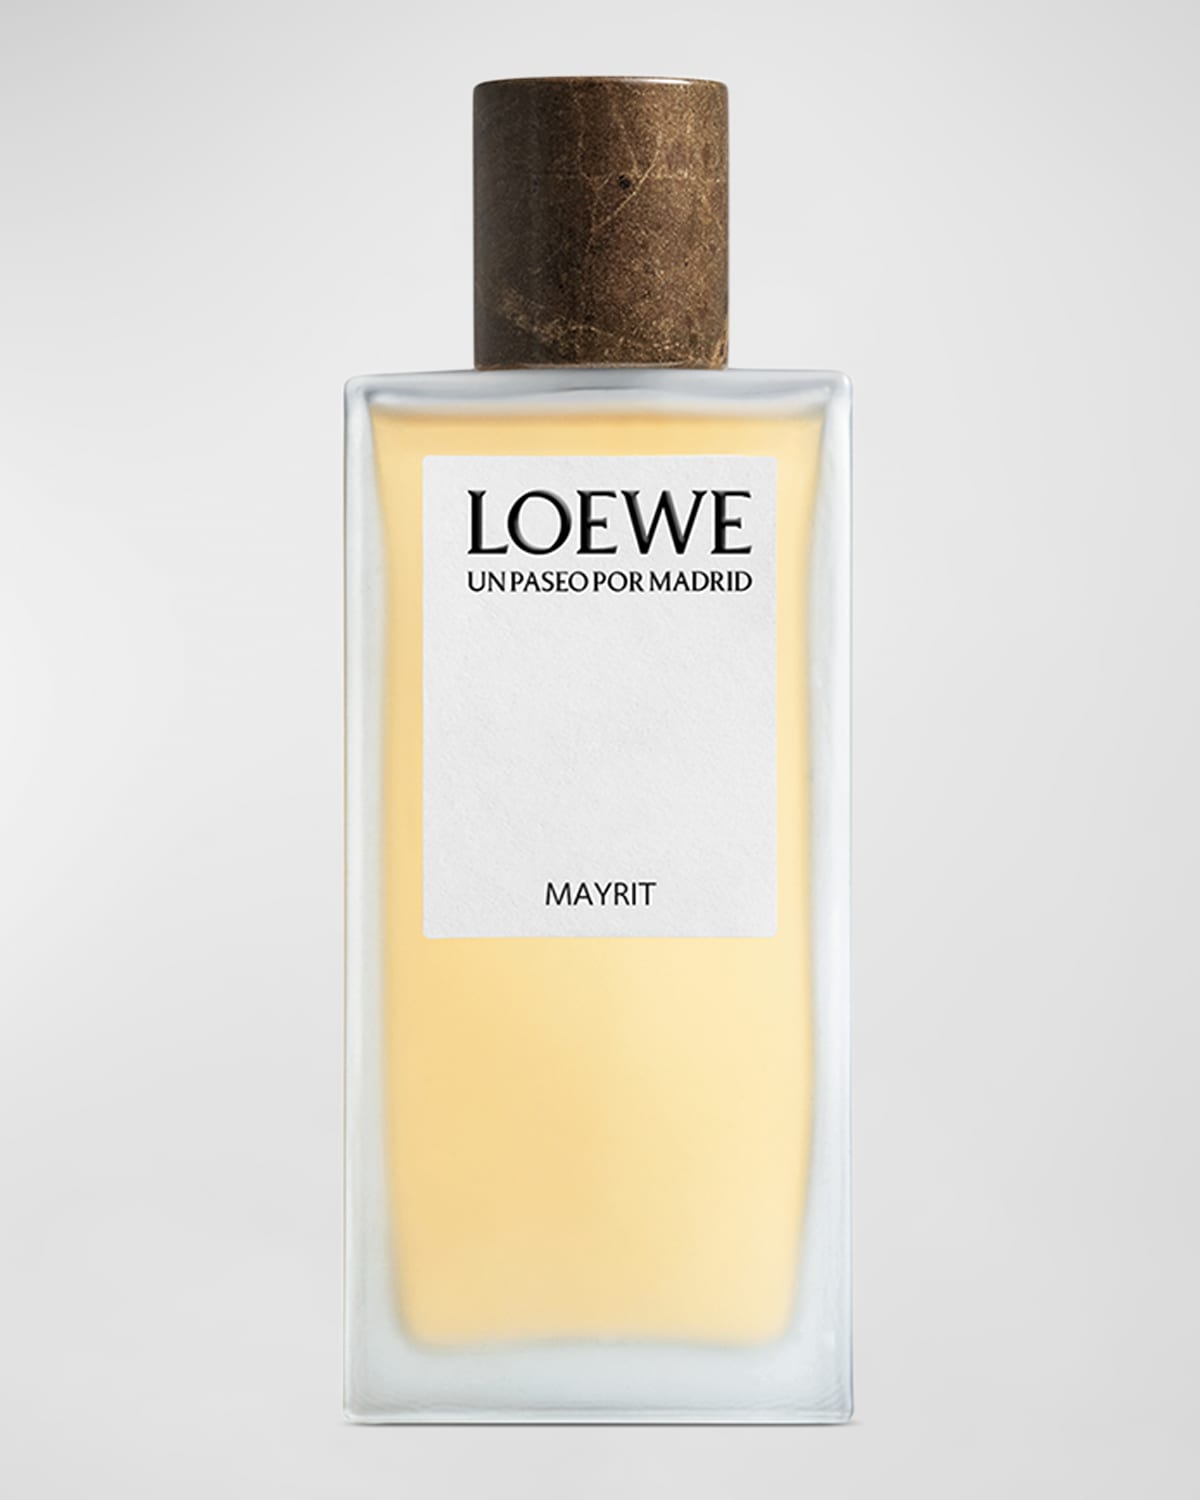 Shop Loewe Un Paseo Por Madrid Mayrit Eau De Parfum, 3.4 Oz.